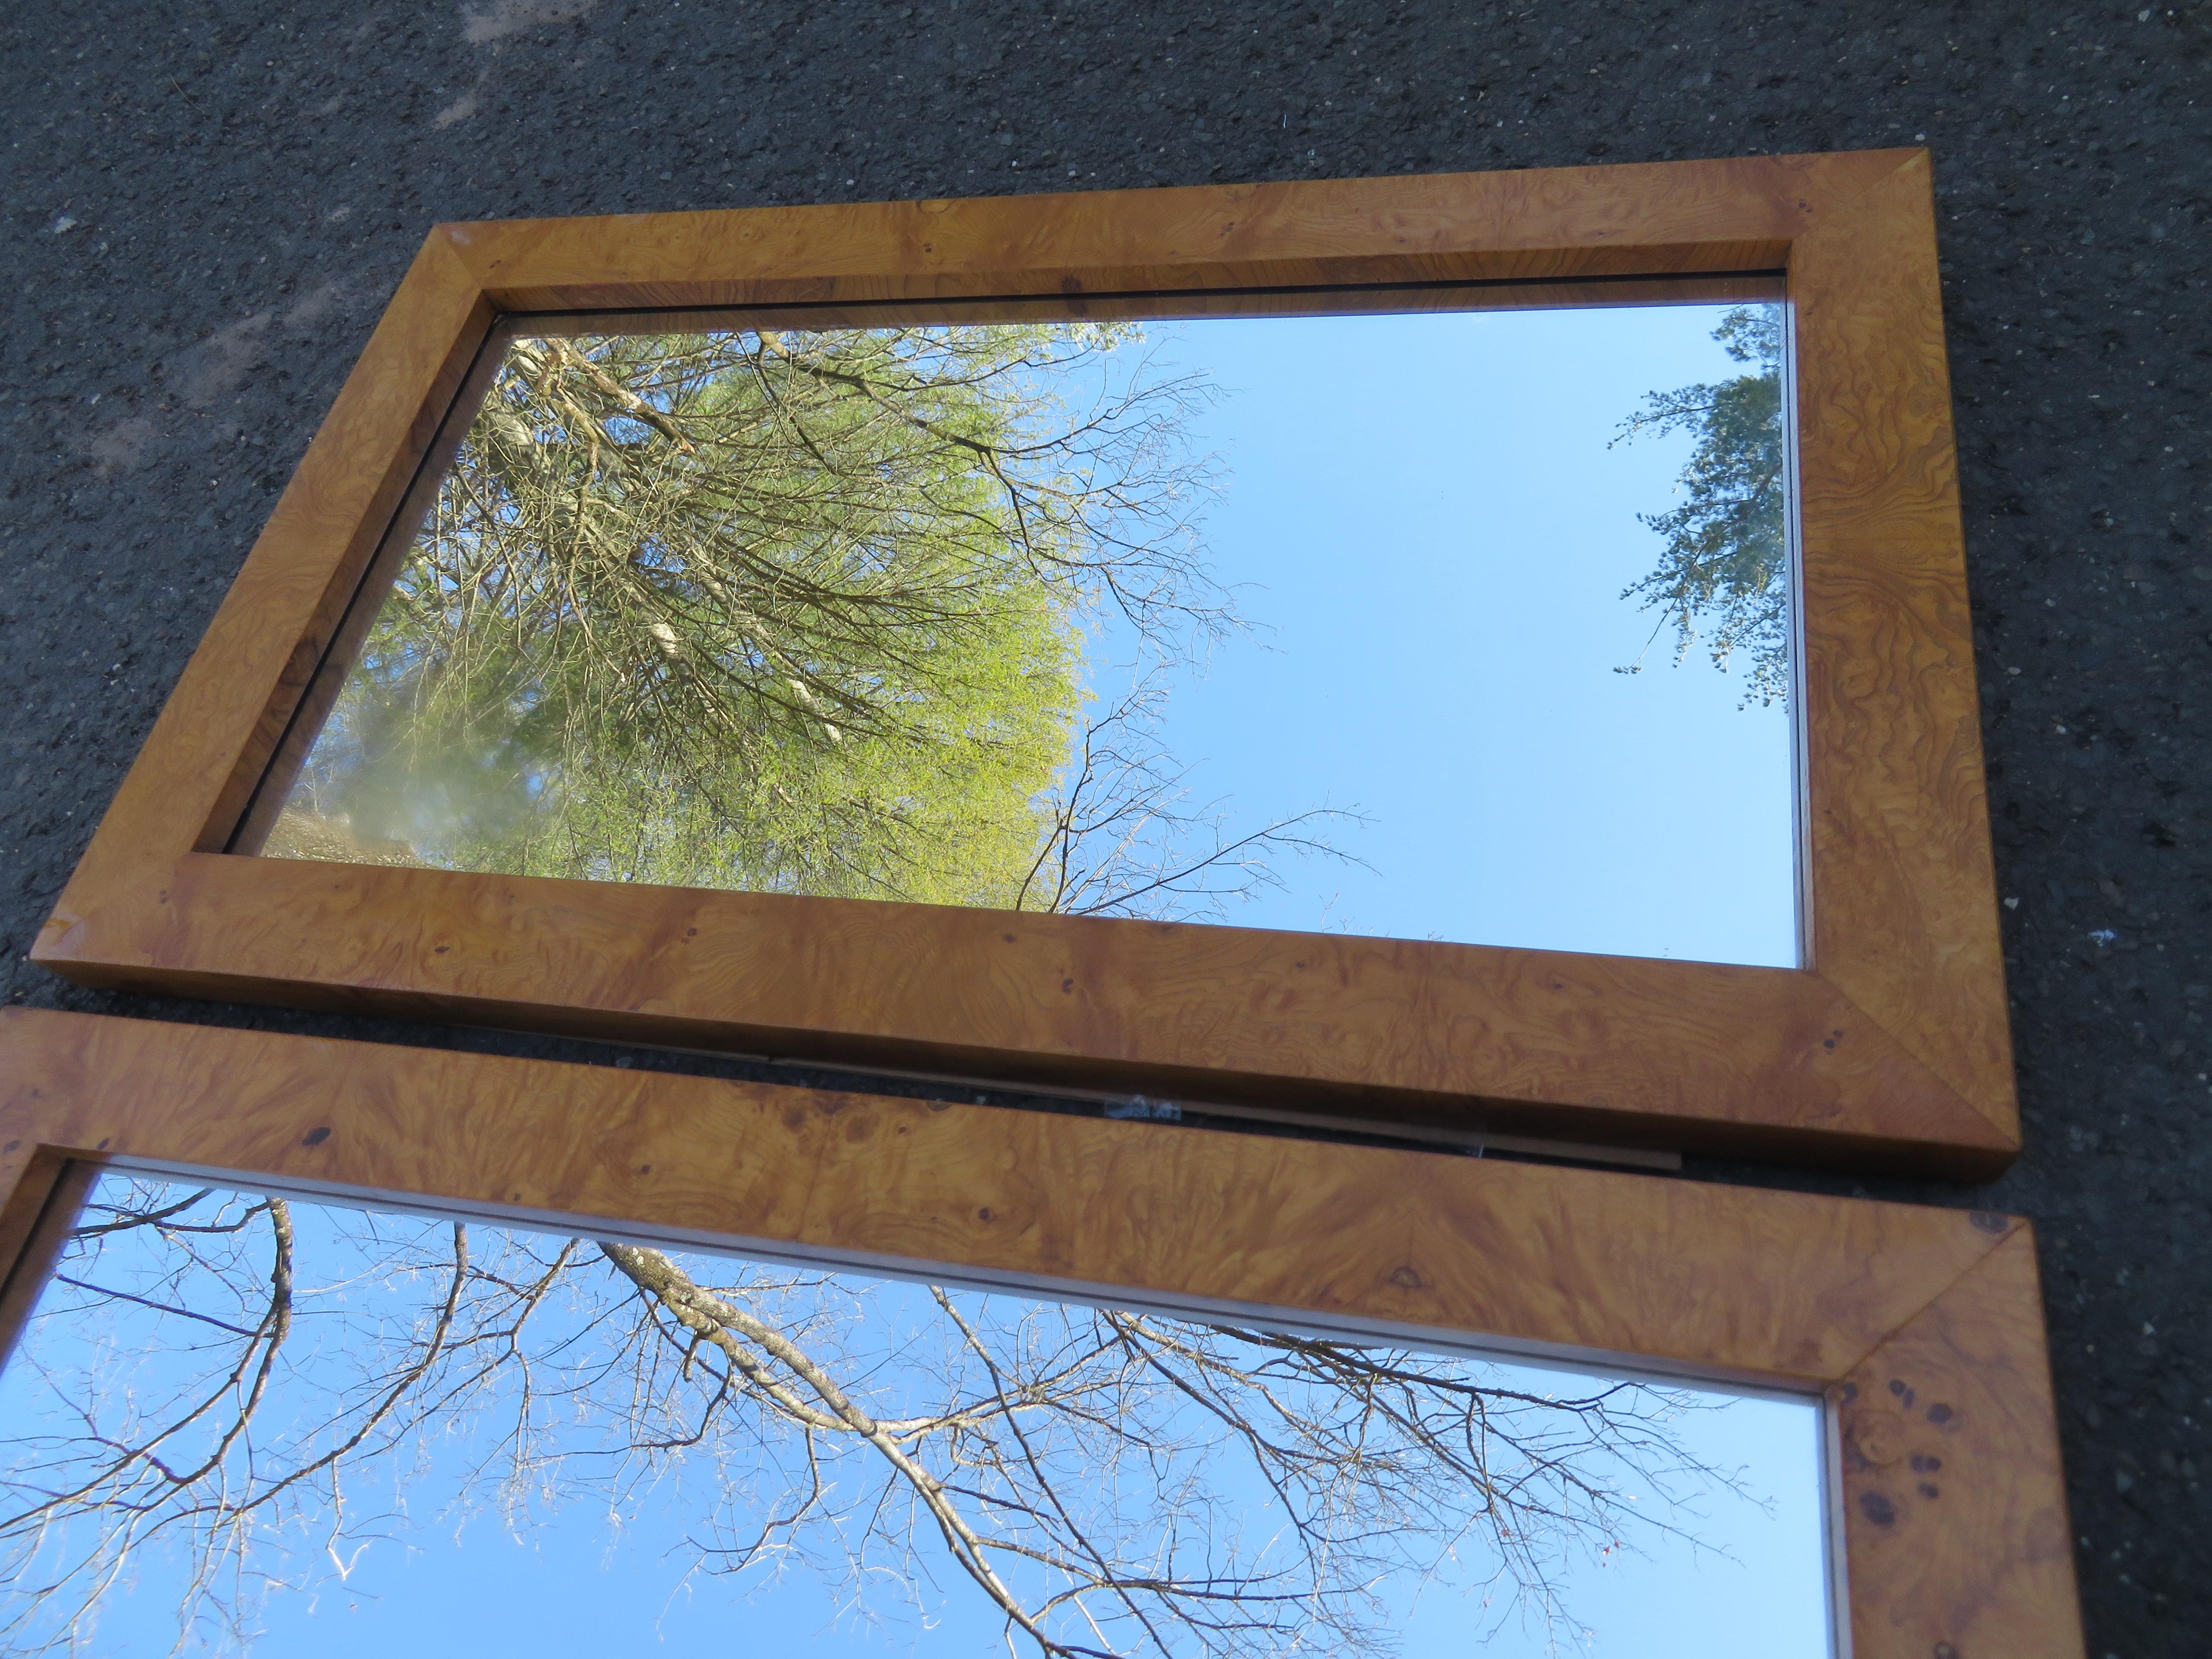 Rare paire de miroirs en bois de ronce de Milo Baughman pour Thayer. Il est déjà fabuleux d'avoir un de ces miroirs, mais avoir une paire assortie est encore plus fabuleux. Ils mesurent 48